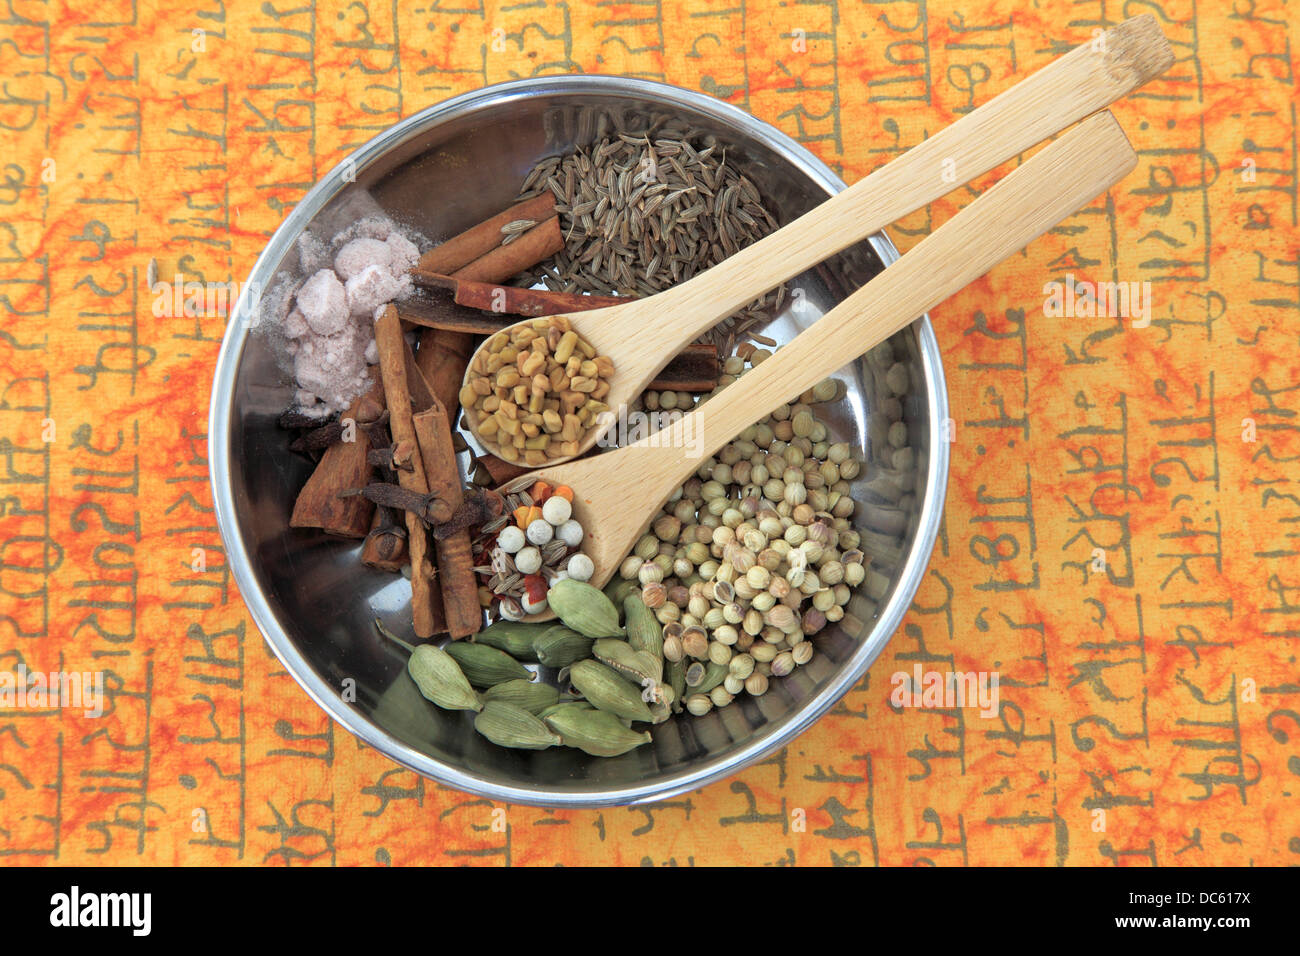 Garam masala, spice mix, Stock Photo